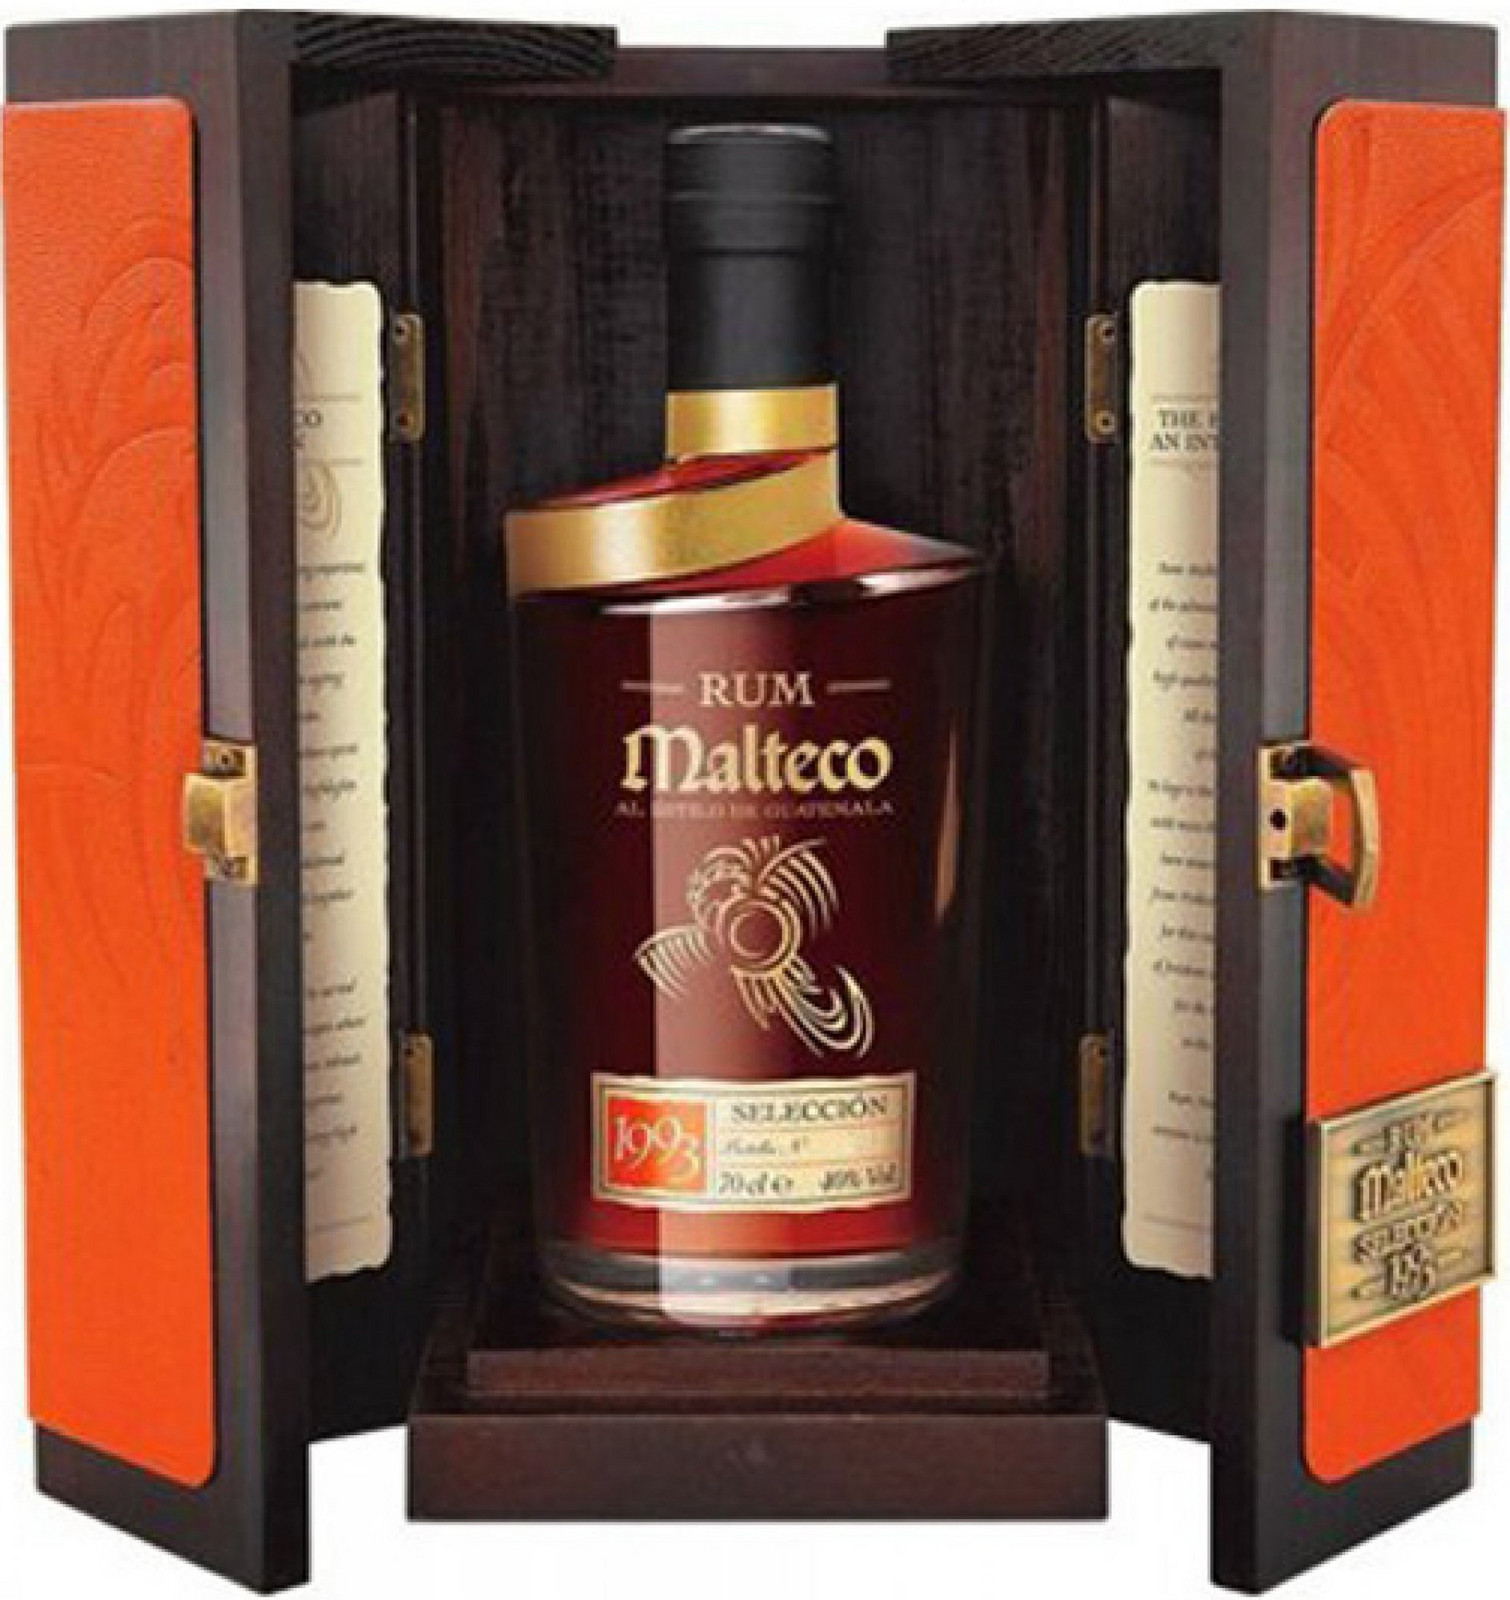 Malteco 1993 Seleccion vintage Panama rum 40% 0,7l